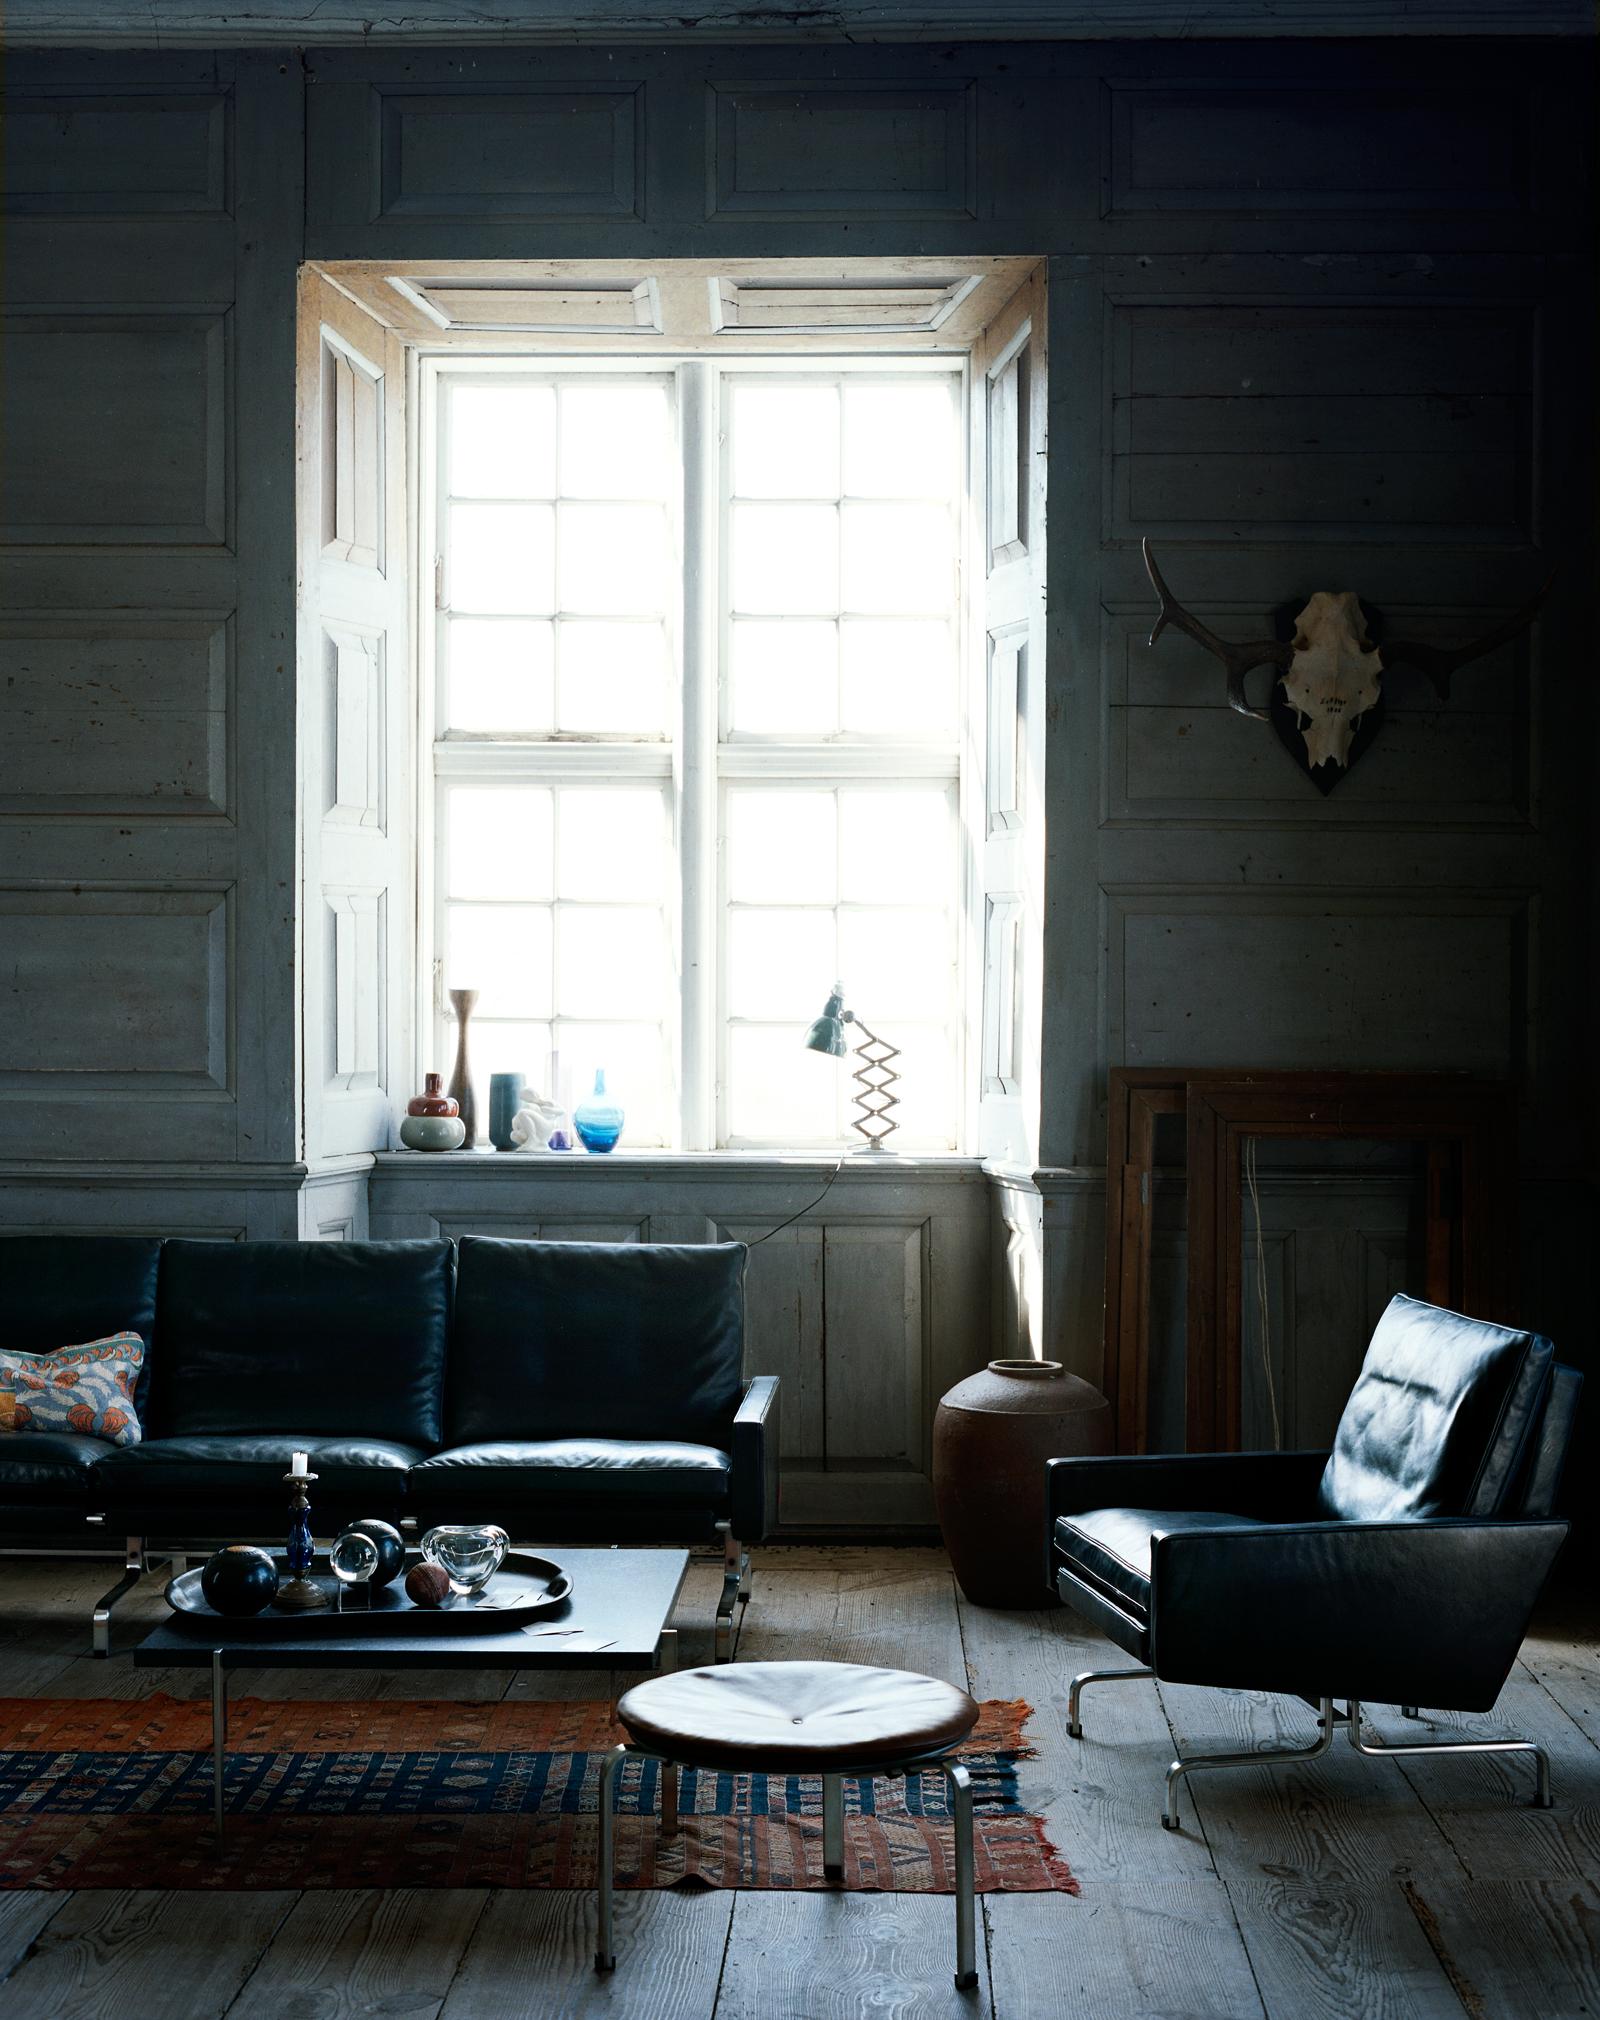 Wohnzimmer mit Sitzmöbeln aus schwarzem Leder #geweih #hocker #teppich #erkerfenster #schwarzesledersofa ©Fritz Hansen/Ditte Isager